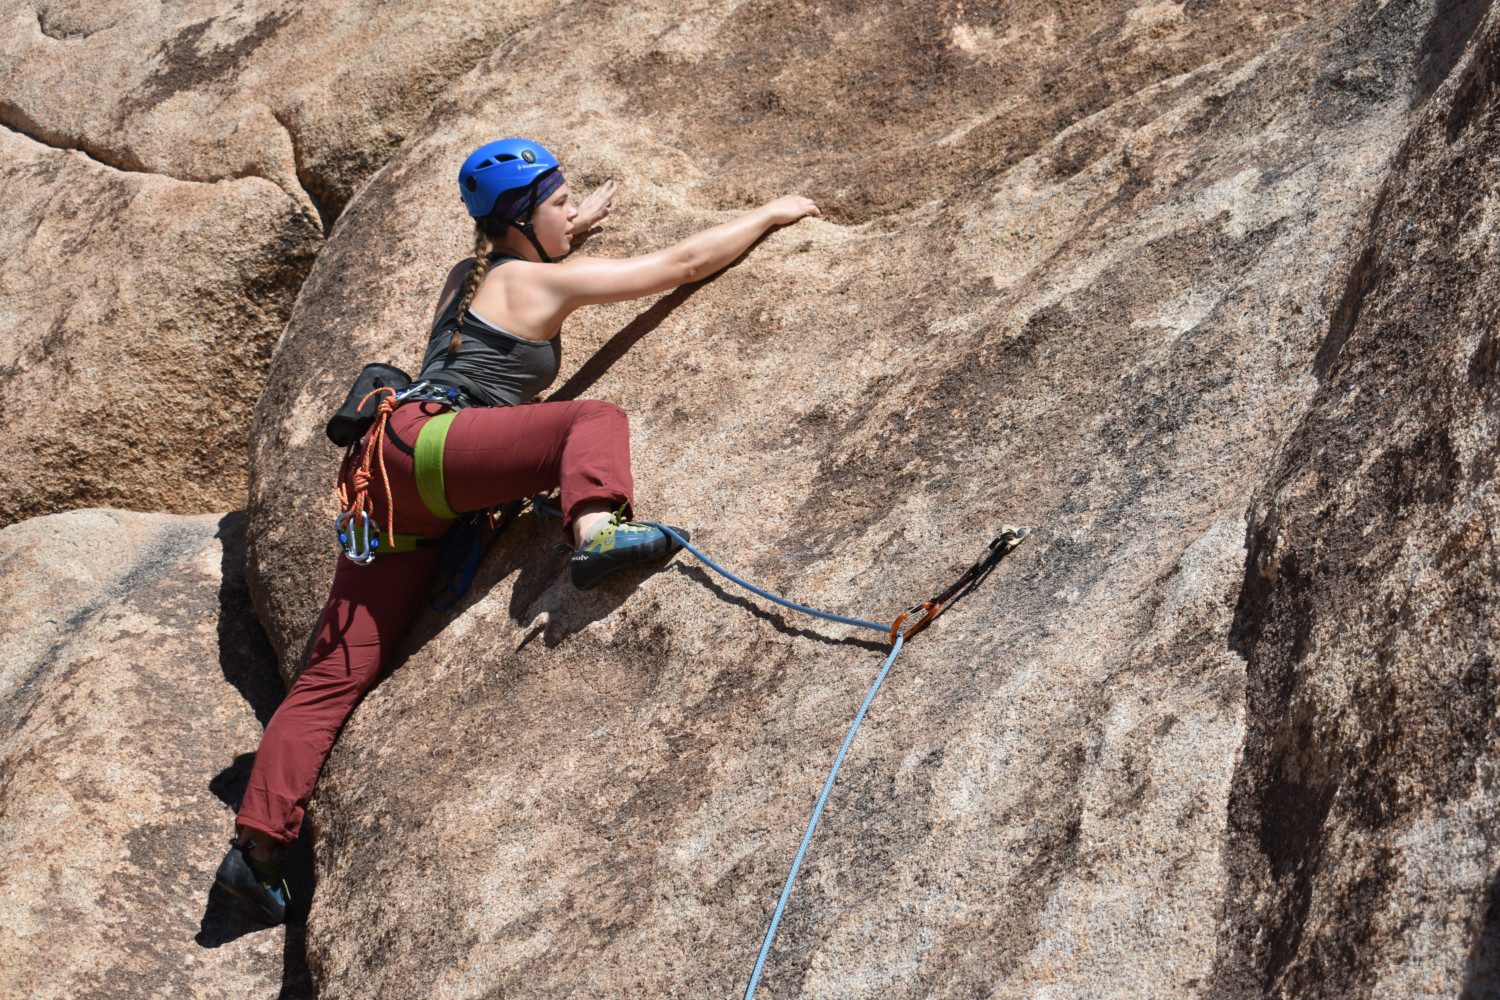 Katie Hansen, a Clemson senior, during a rock climbing adventure